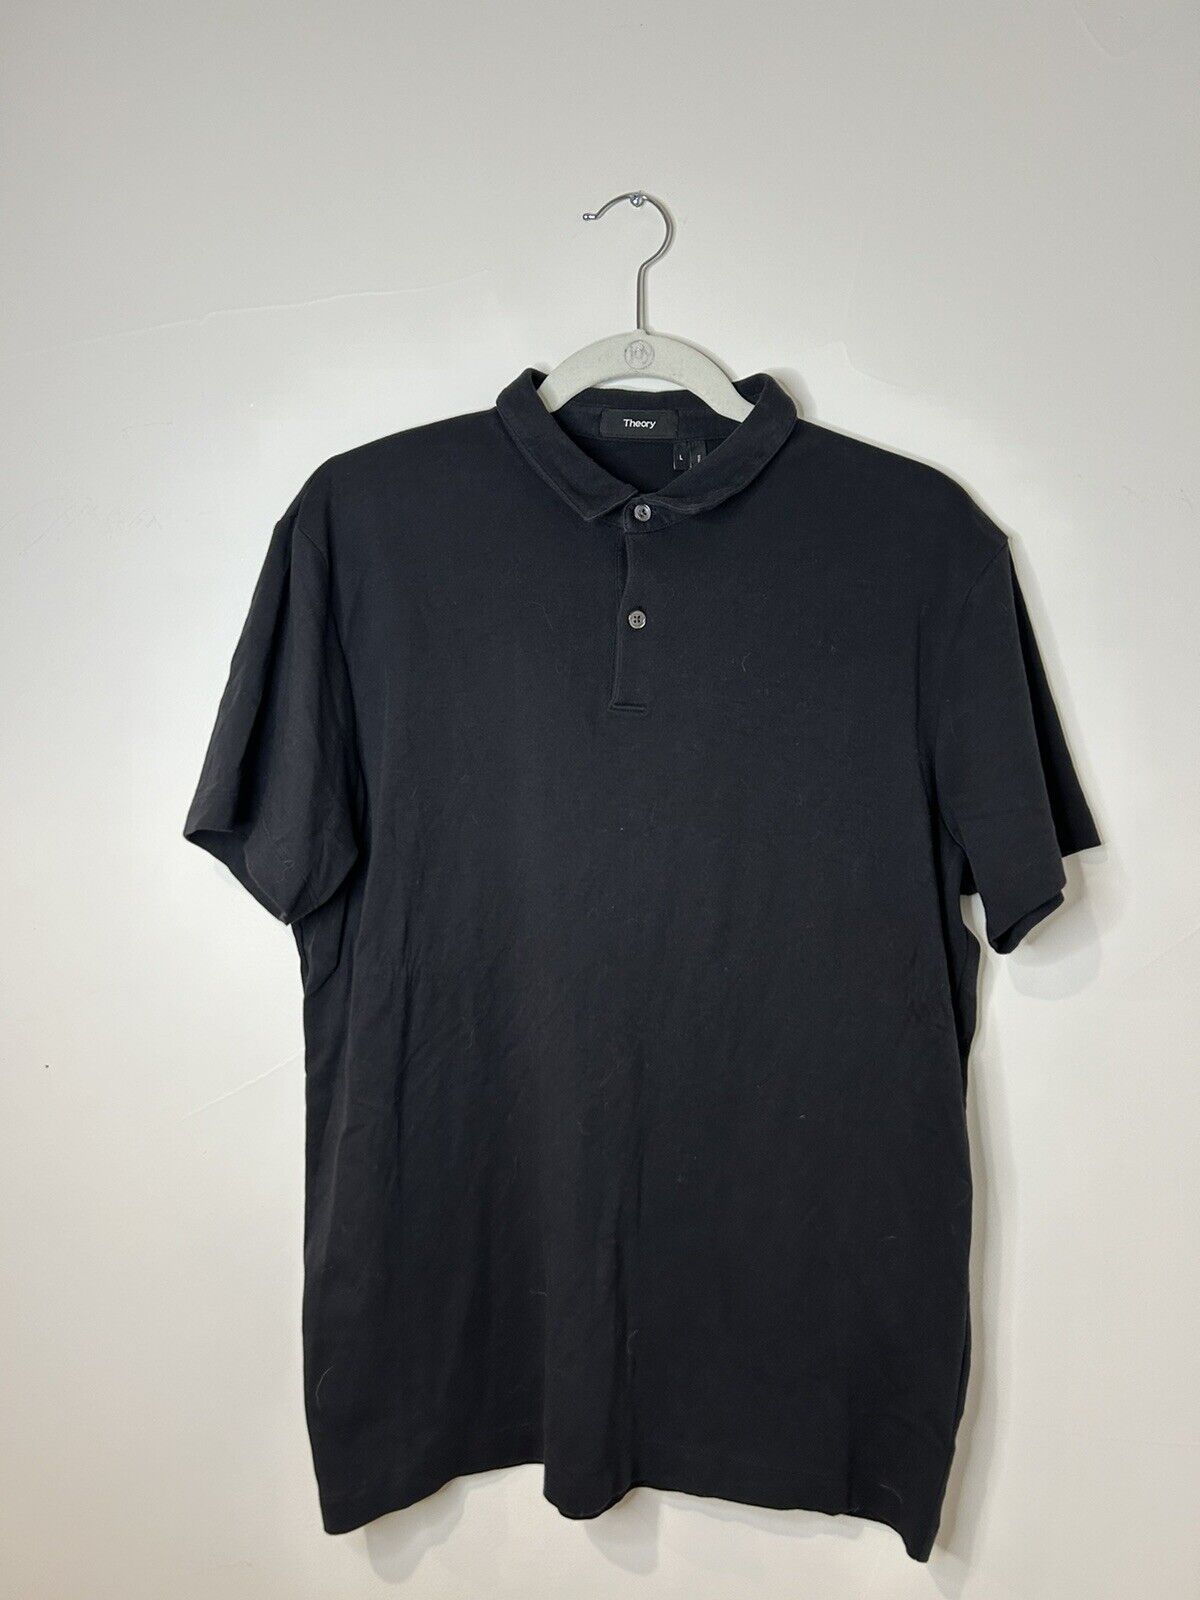 Theory Men's Short Sleeve Polo Shirt Black Large - image 2